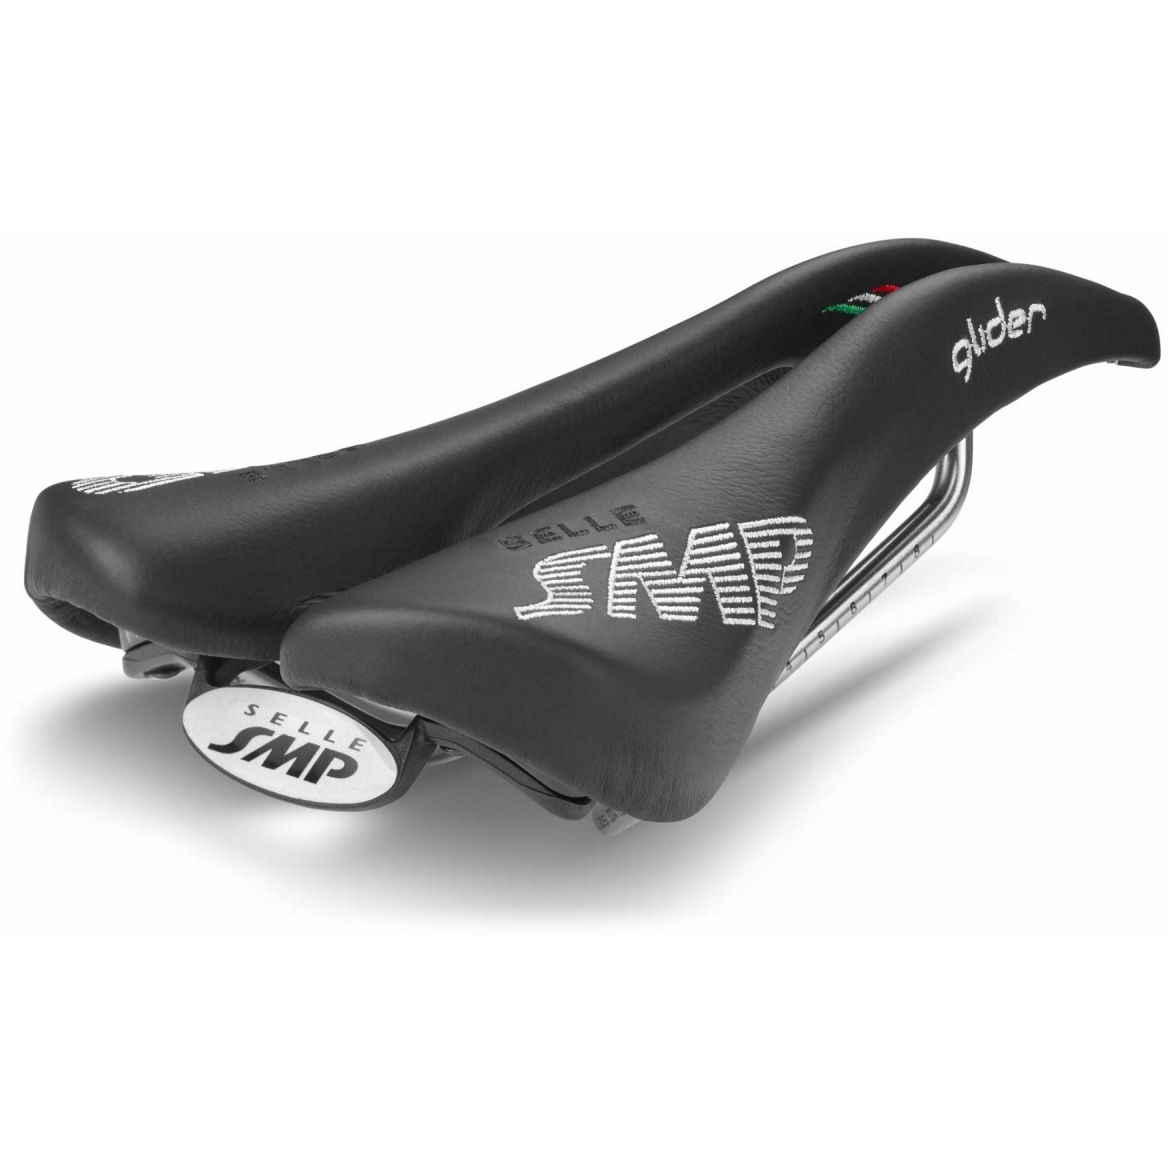 Produktbild von Selle SMP Glider Sattel - schwarz